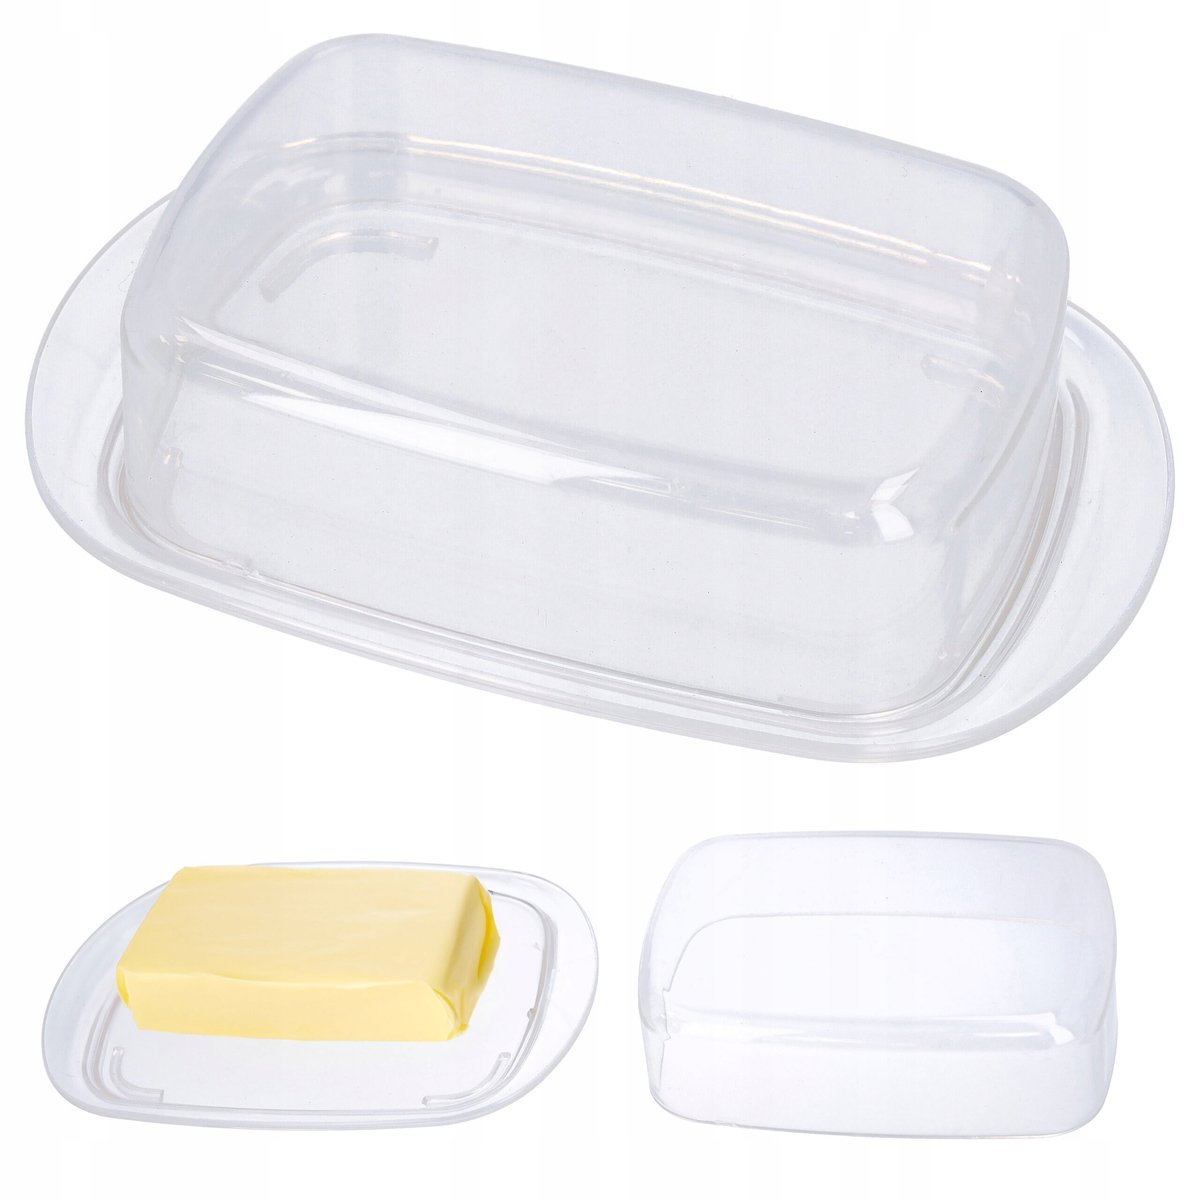 Zdjęcia - Maselniczka Pojemnik na masło z pokrywką biały plastik 18x11,5 cm maselnica maselniczk